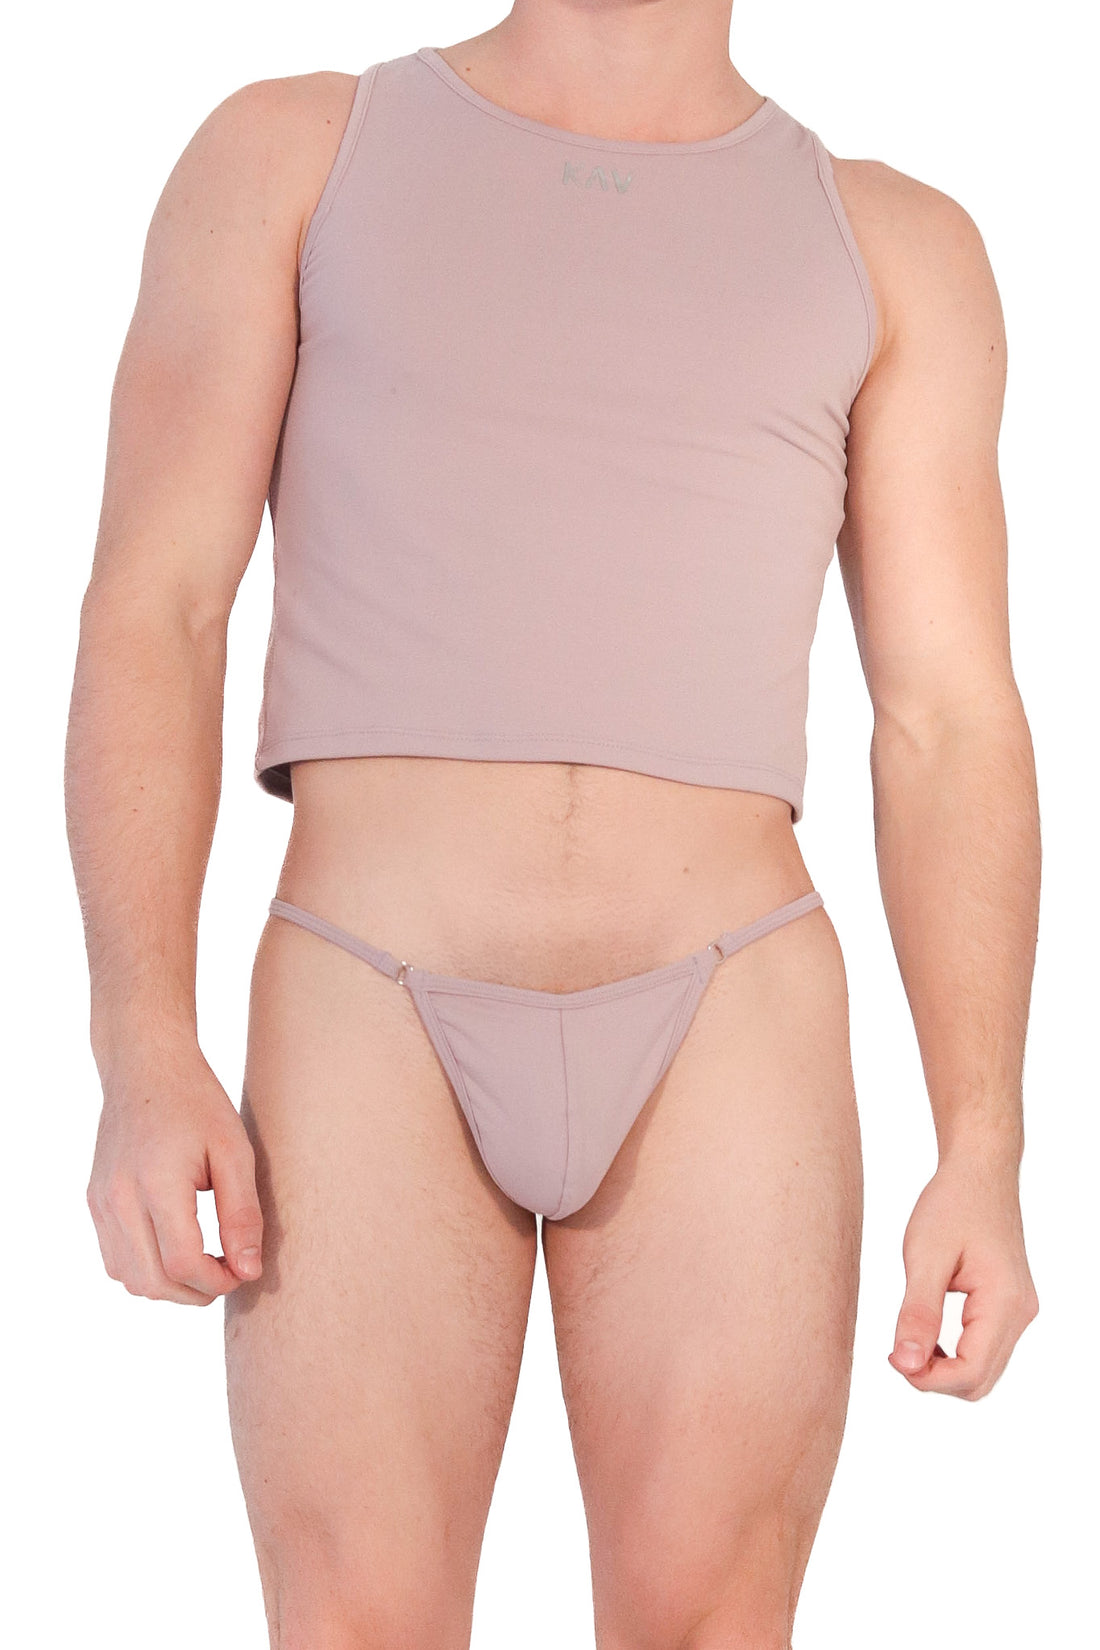 Men – Underwear Bottoms Wear KAV